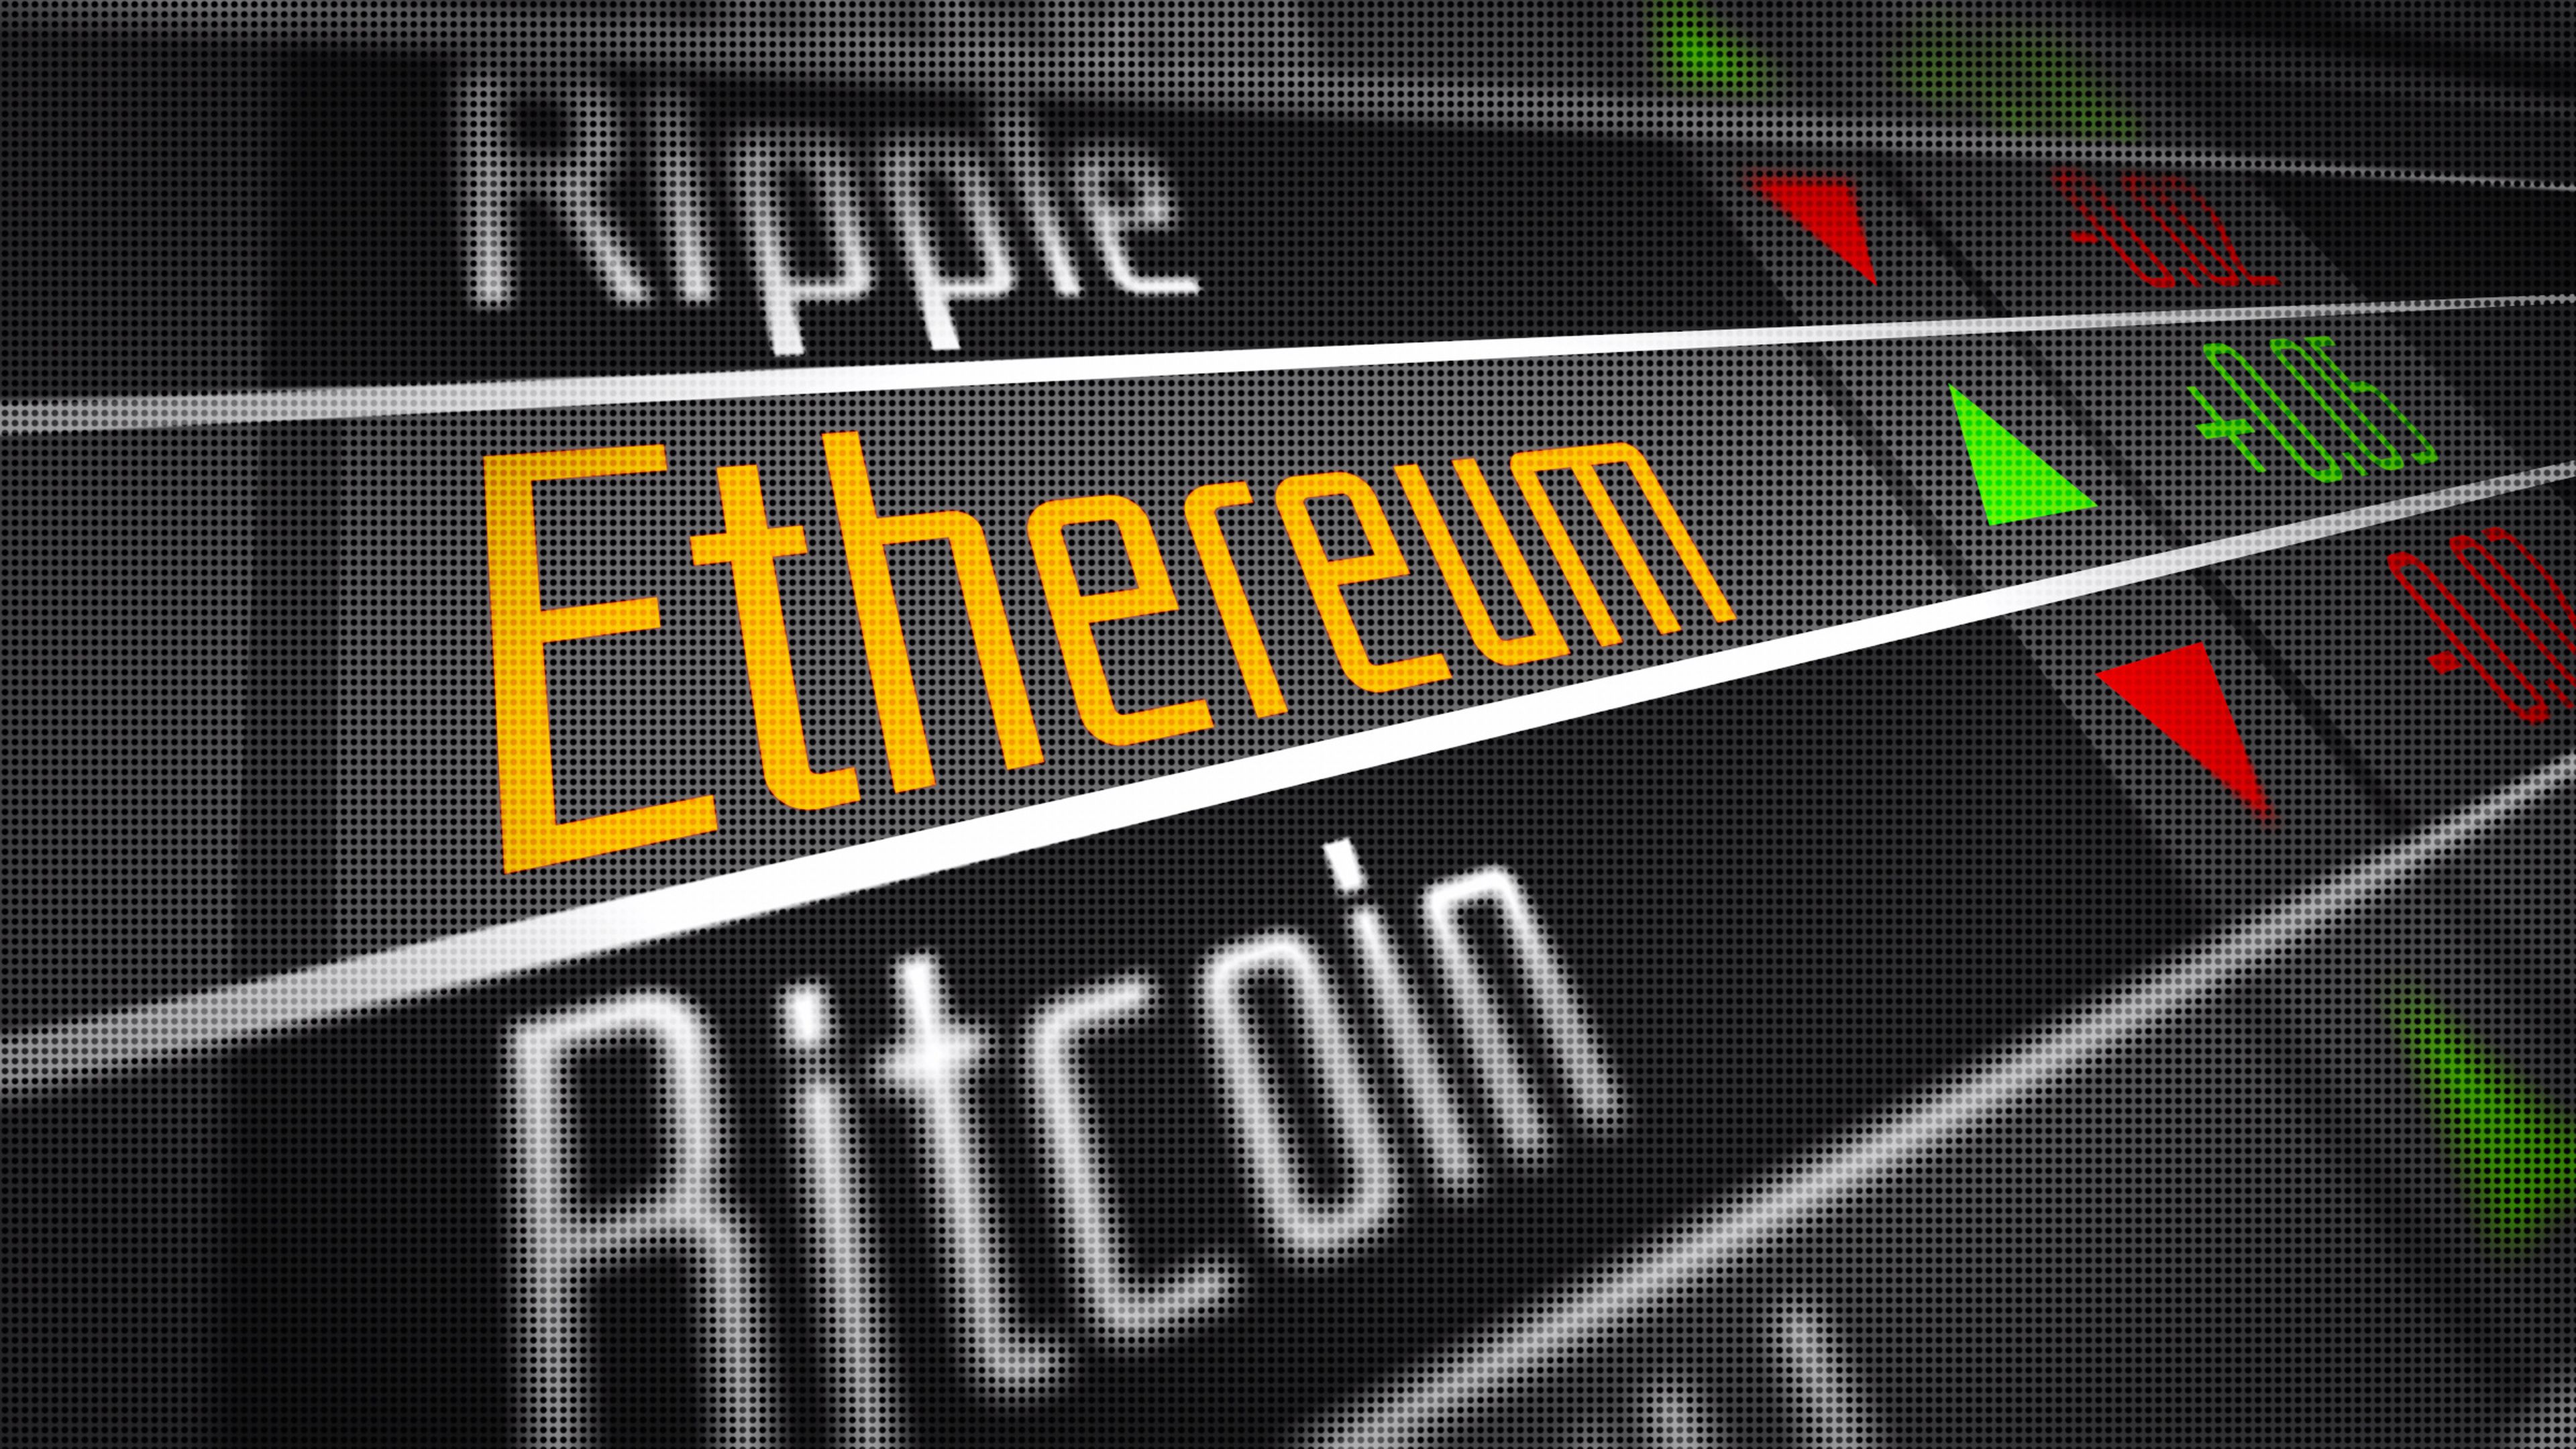 Ethereum y Bitcoin